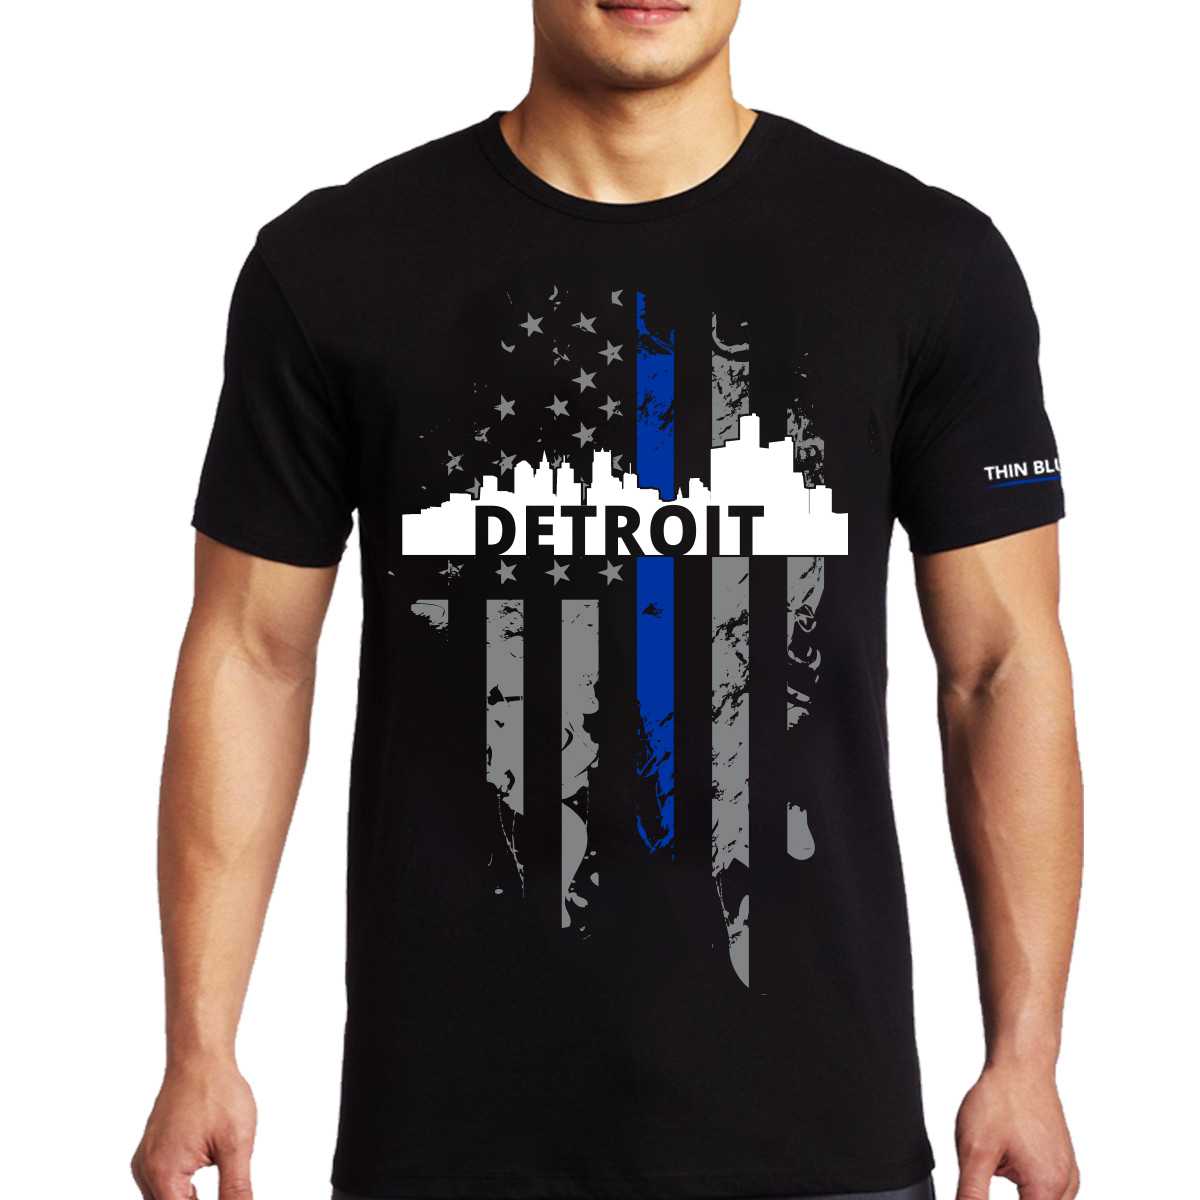 T-Shirt - Detroit Large, Thin Blue Line